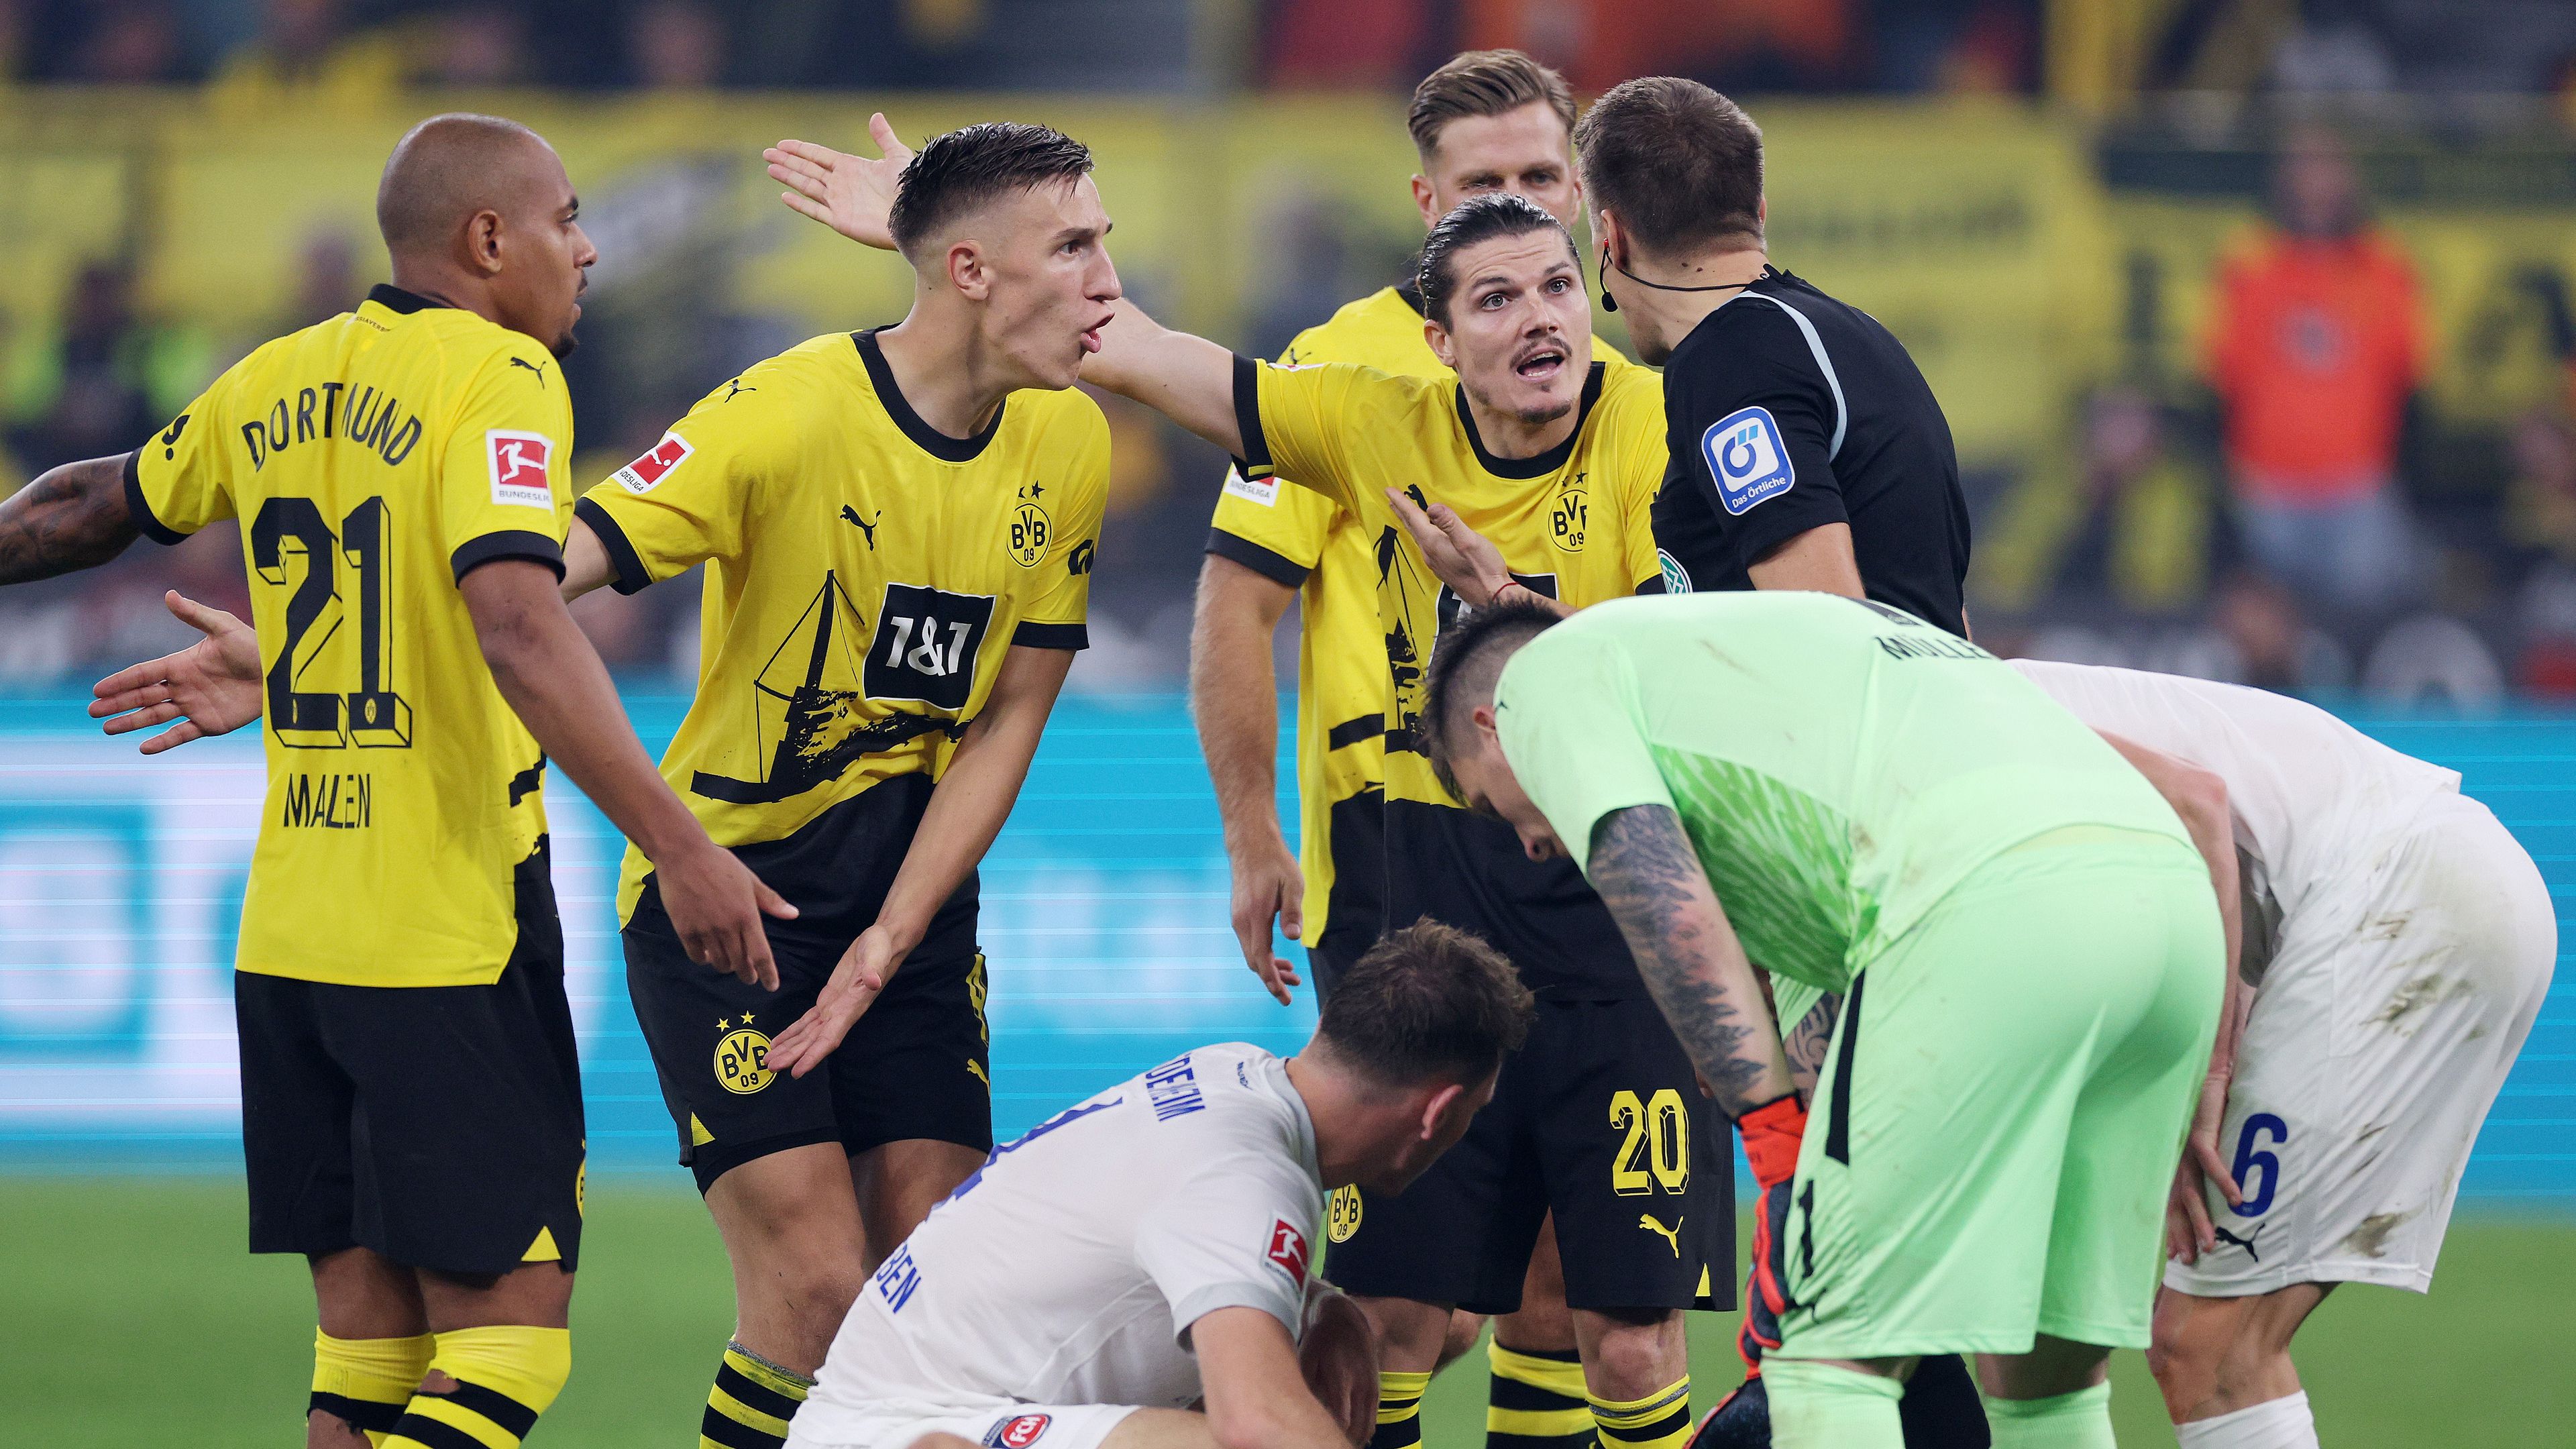 Hiába a kétgólos előny, a Dortmund botlott hazai pályán az újonc ellen